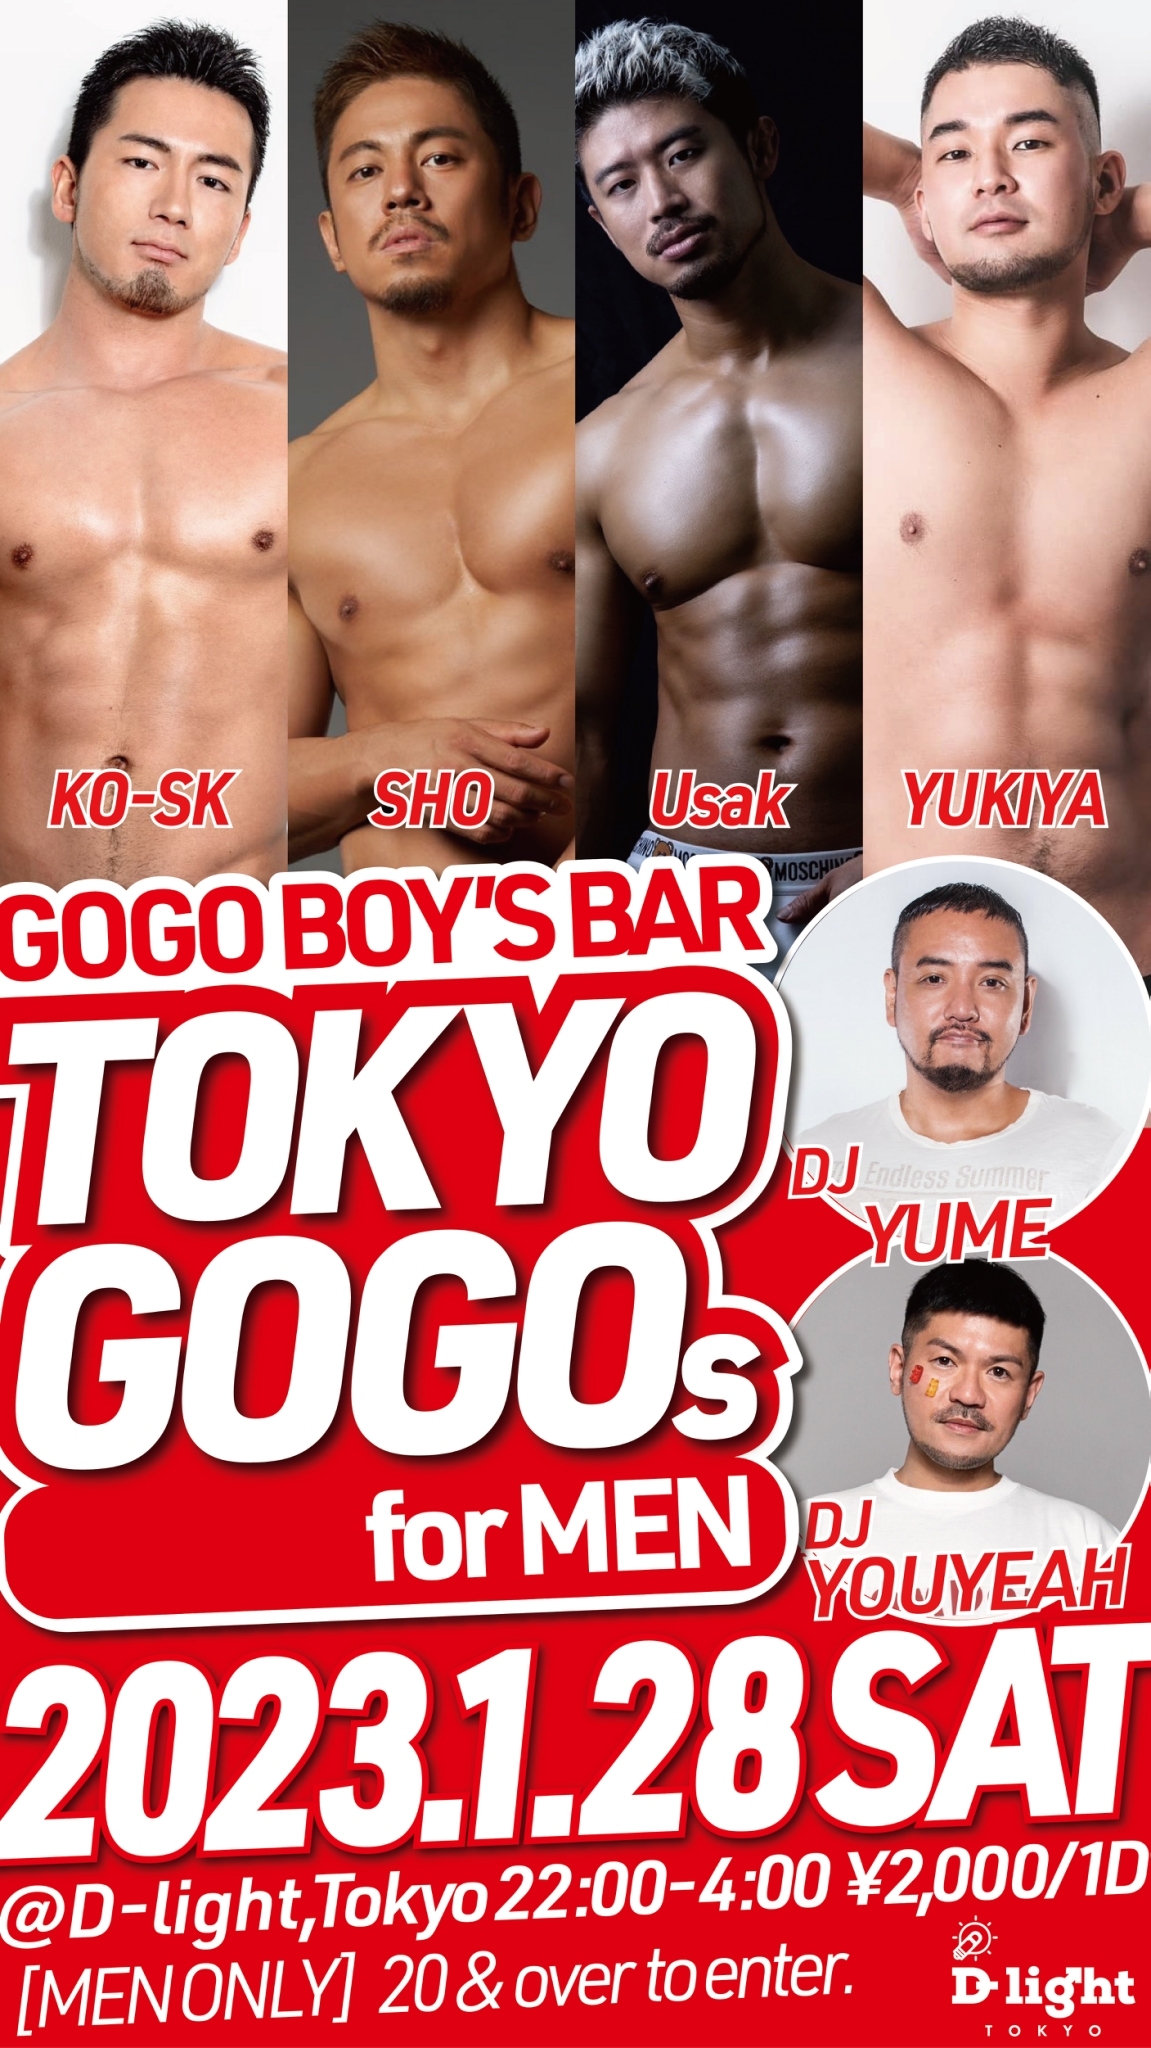 GOGO BOYS' BAR "TOKYO GOGOs" for MEN